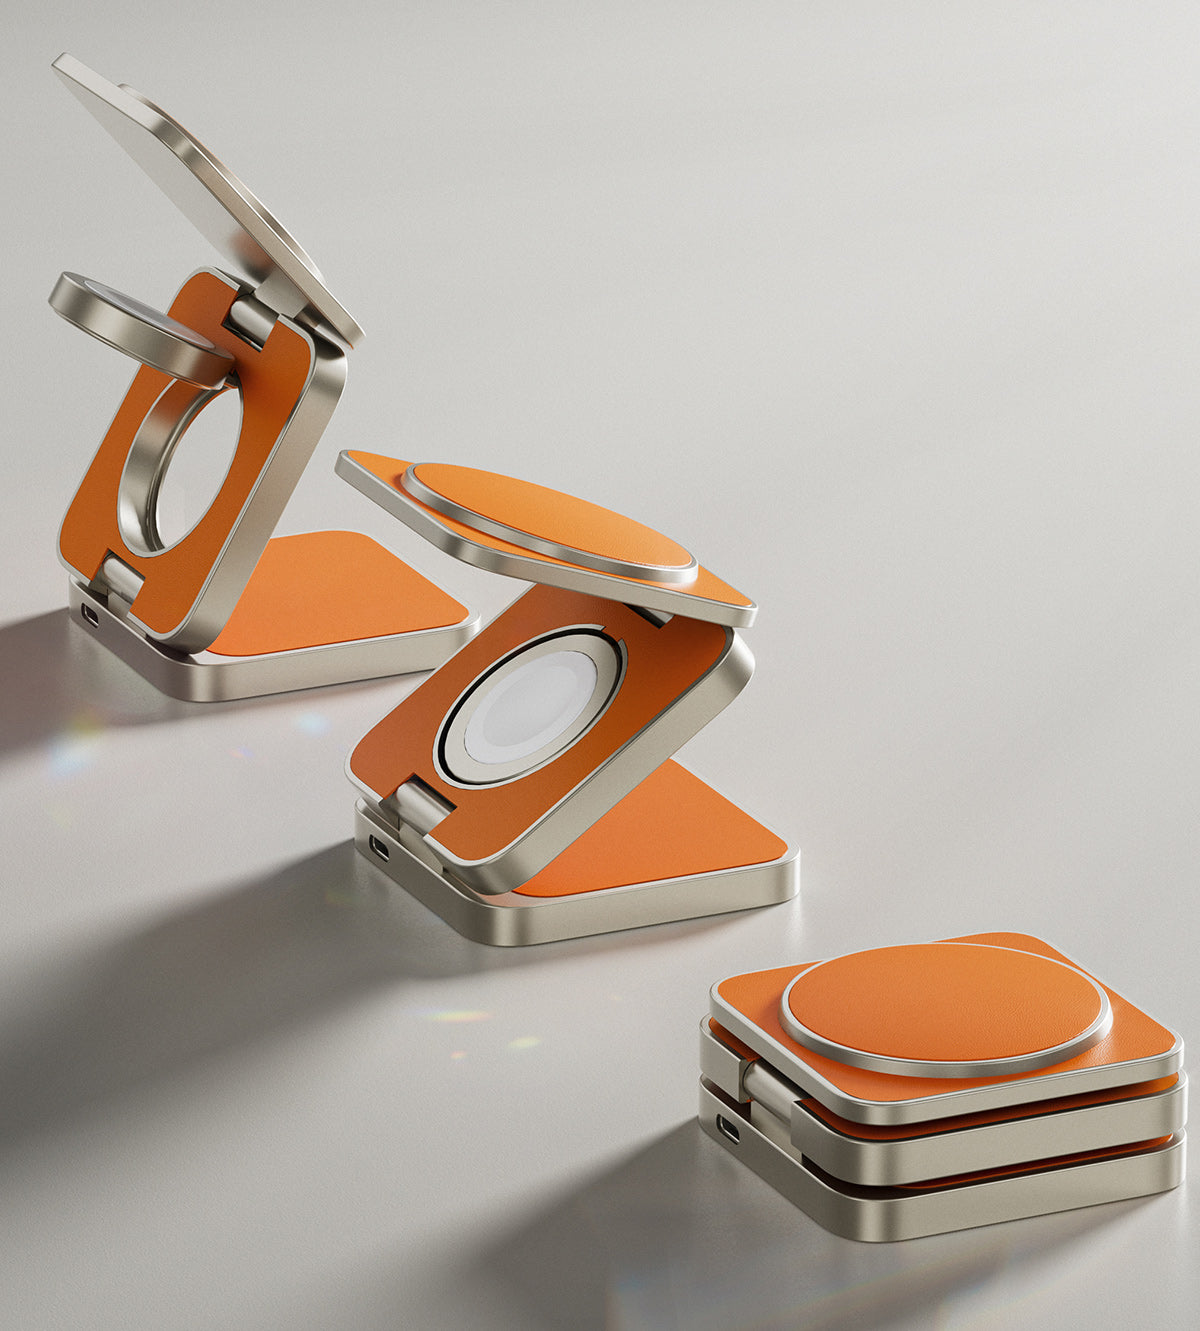 KUXIU X40 Pro 3-in-1 faltbares magnetisches kabelloses Ladegerät und Ständer-Set – orangefarbenes Leder